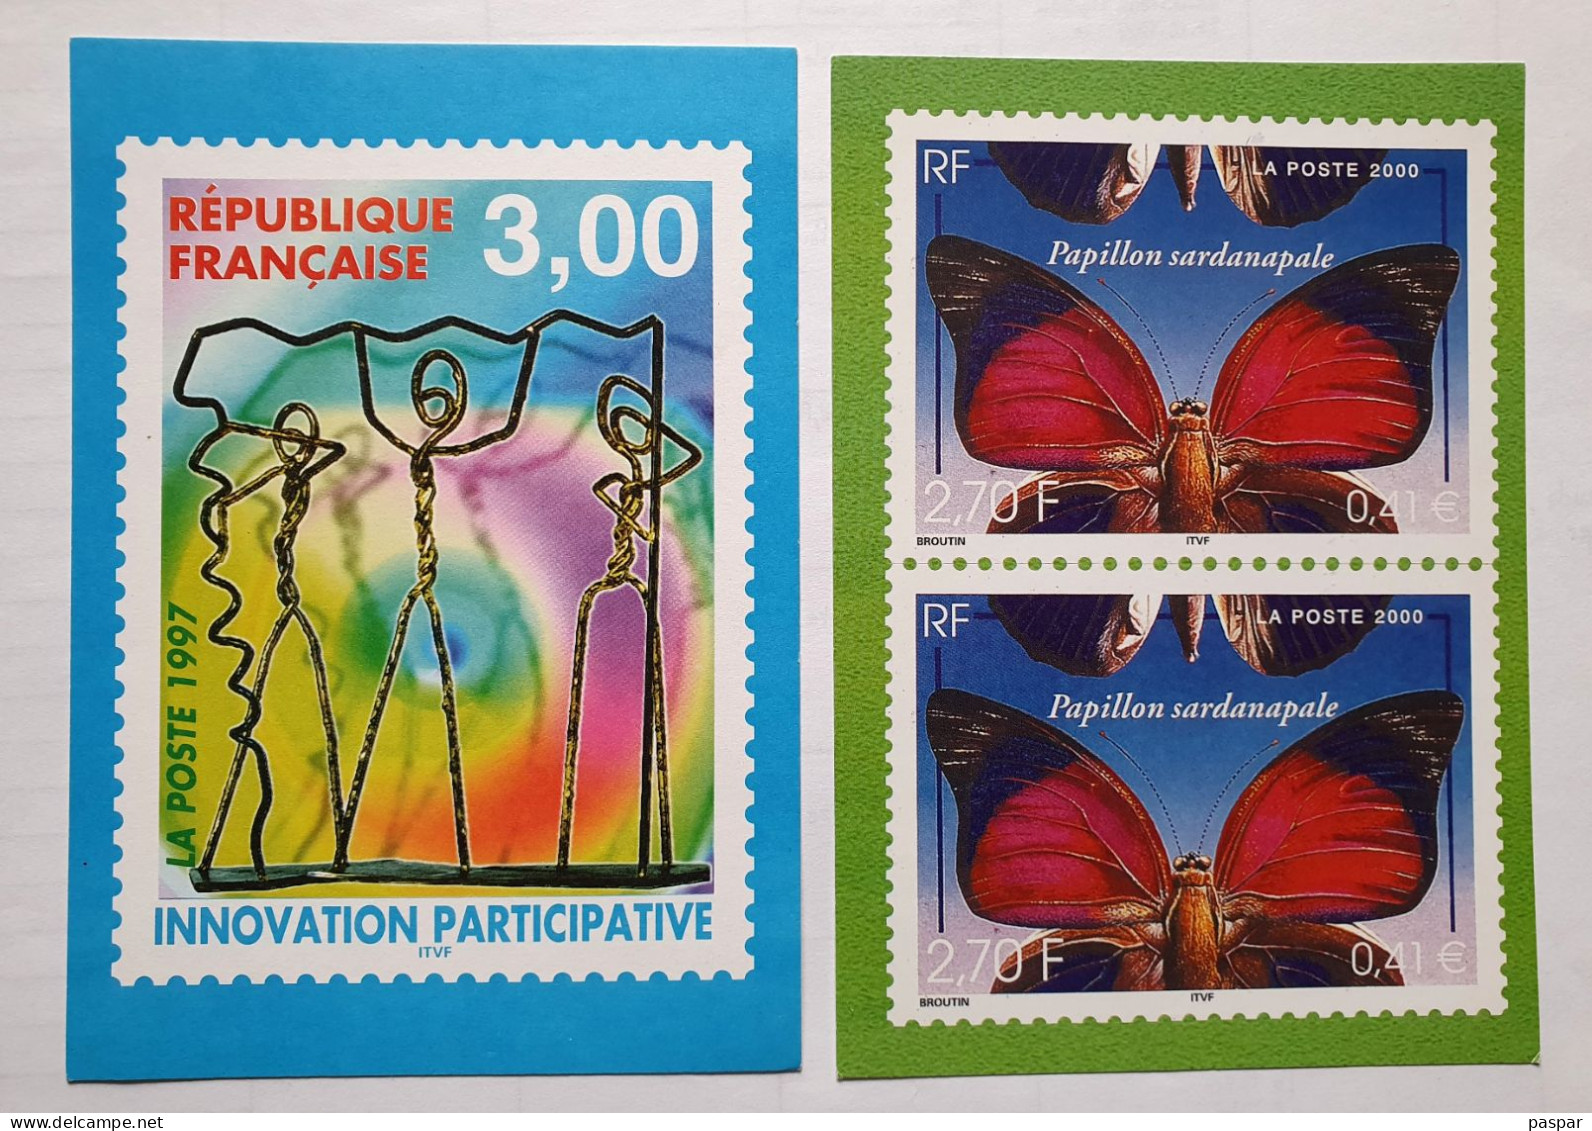 2 Calendriers Des émissions Philatéliques 1997 1er Semestre Et 2000 2ème Semestre - La Poste - Documents Of Postal Services